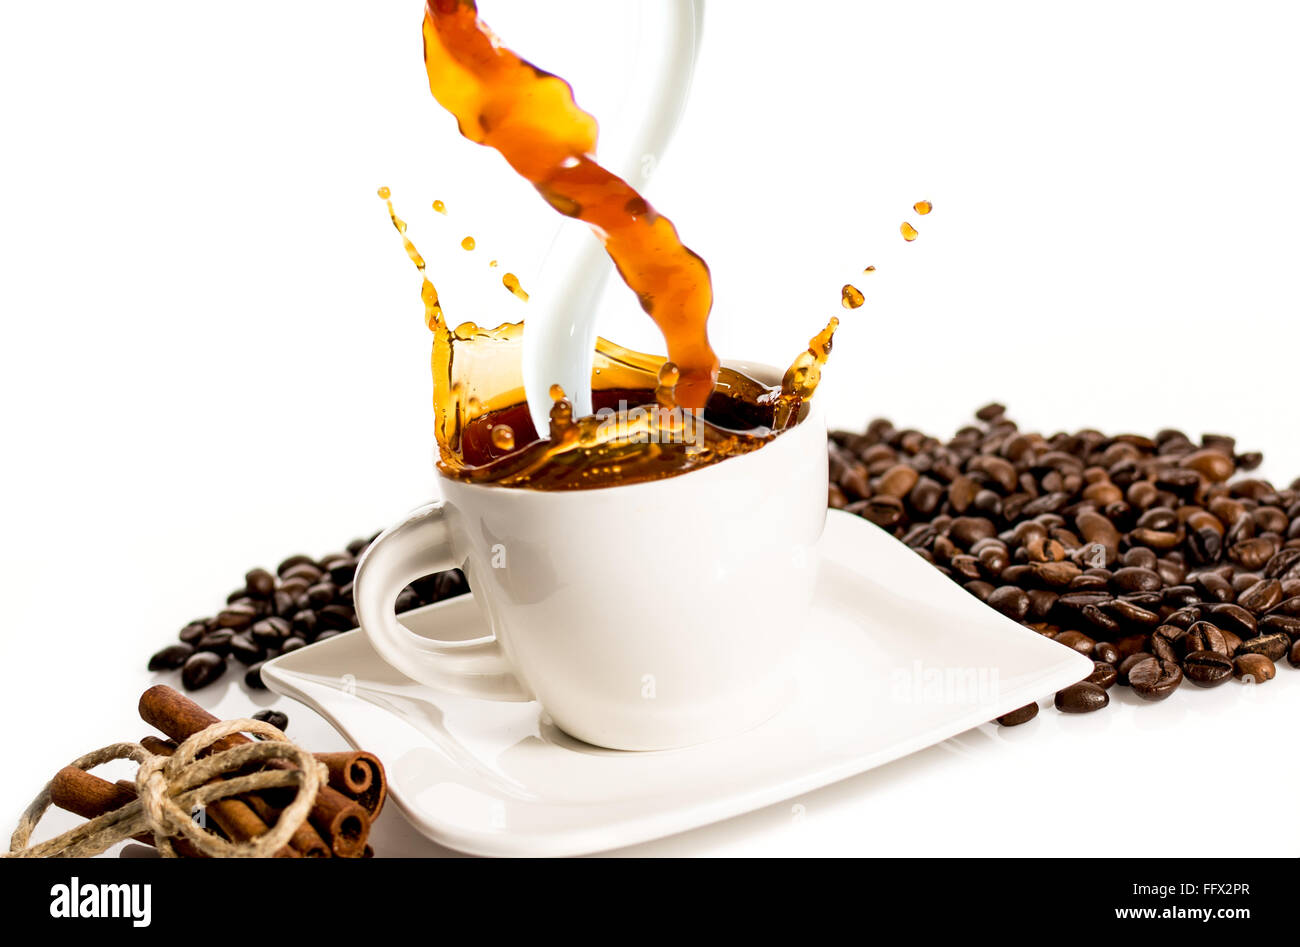 White tazza di caffè con latte splash su sfondo bianco Foto Stock